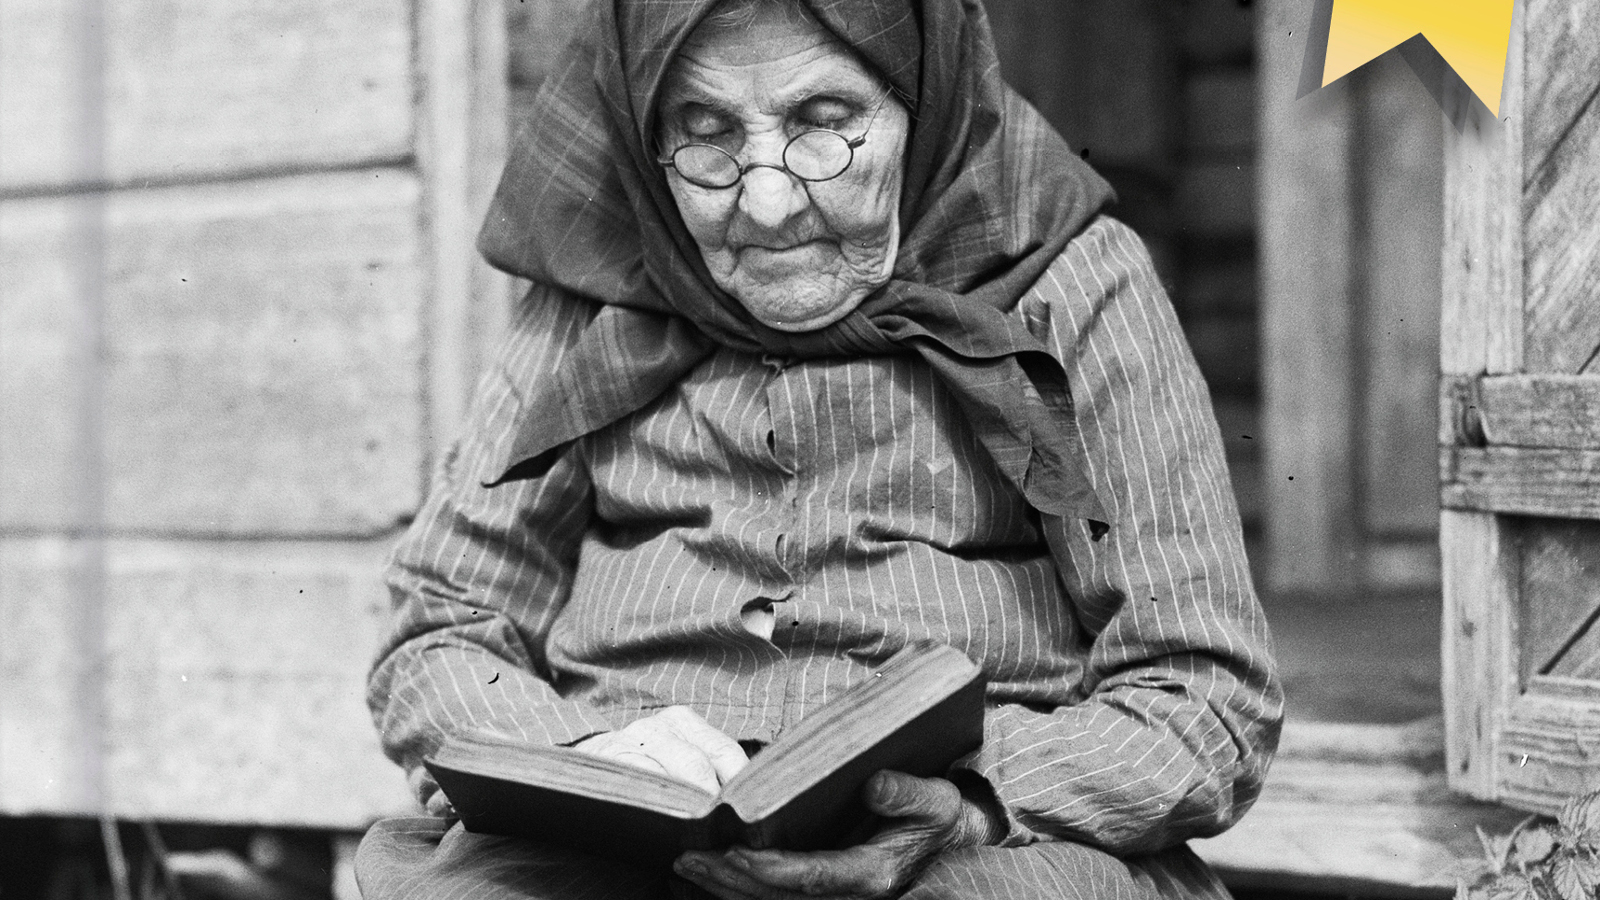 Kuvassa on vanha, ryppyinen nainen musta huivi päässään lukemassa kirjaa. Hän istuu portailla. Kuva on musta-valkoinen.